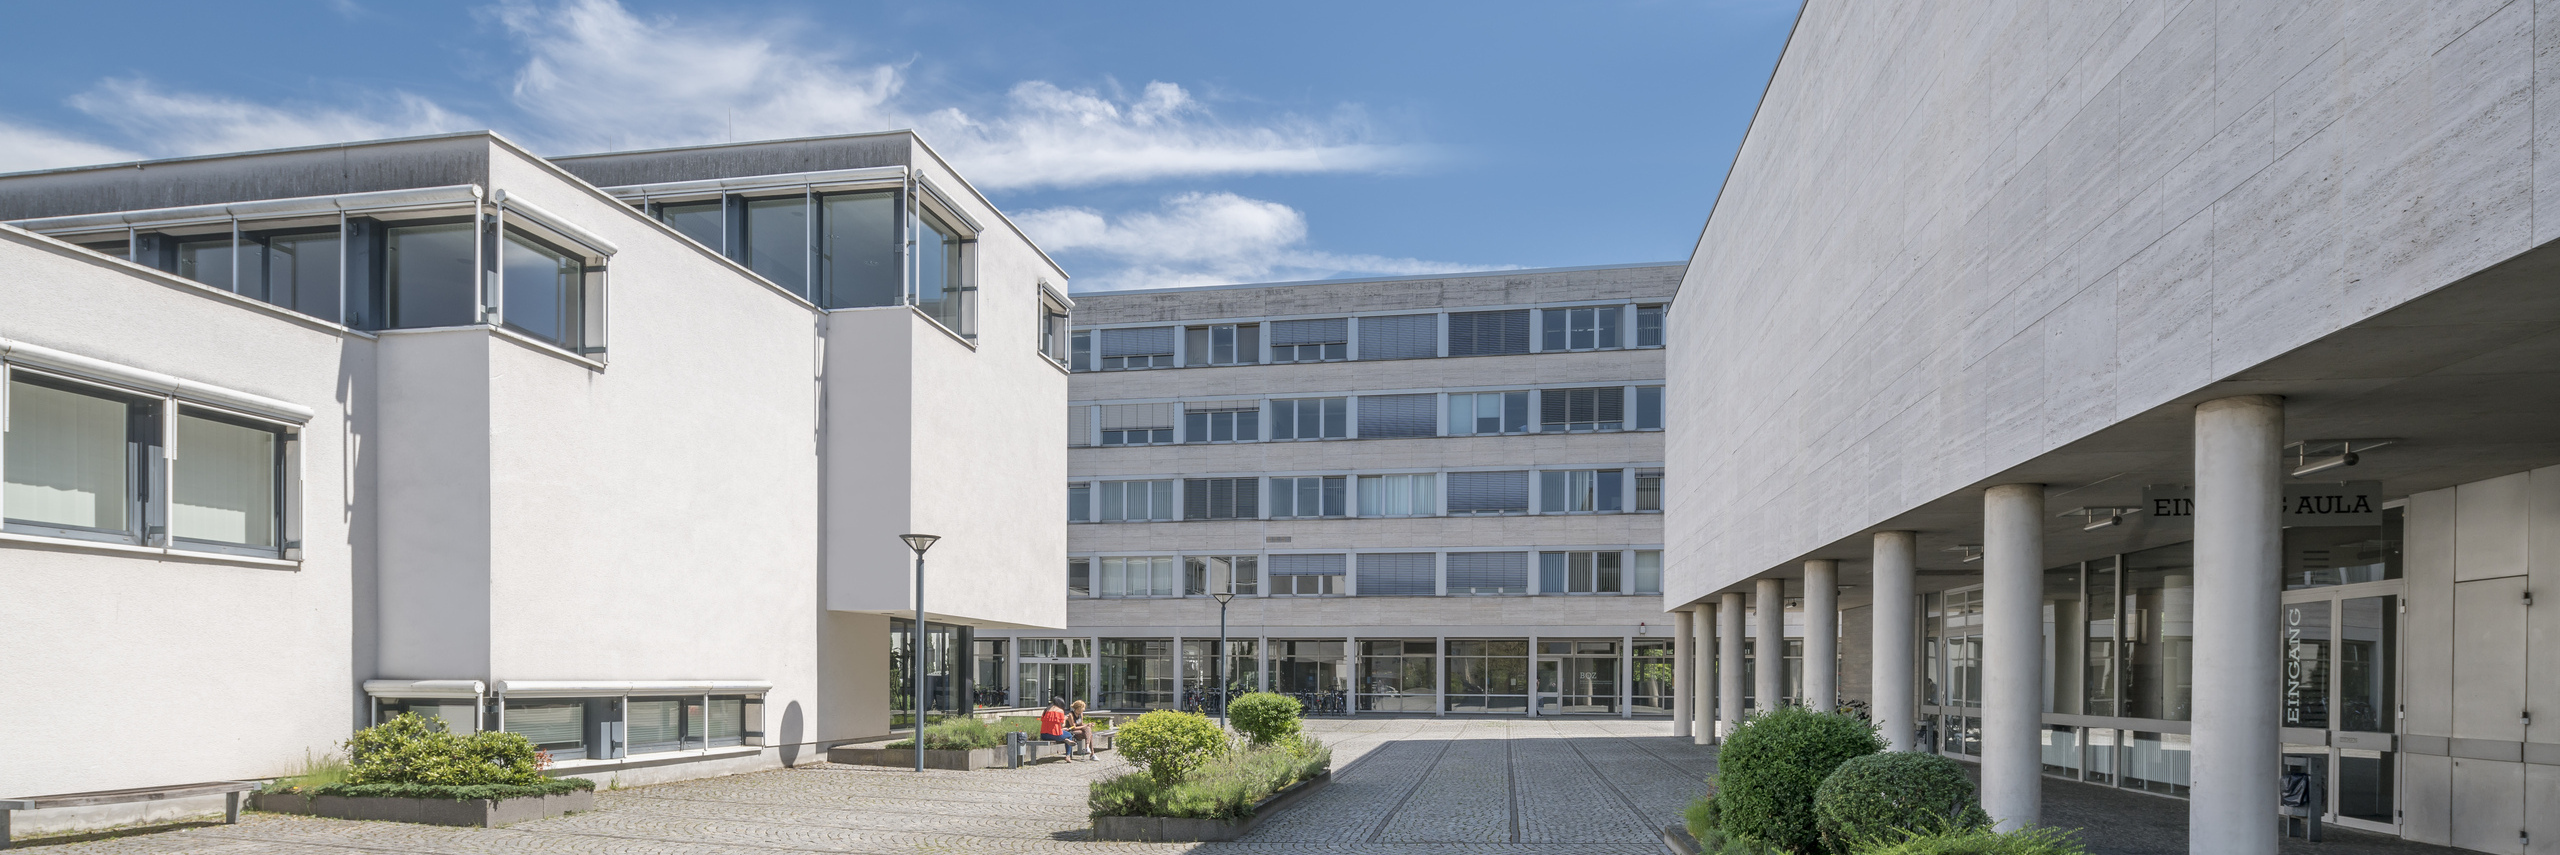 Exterior view of Campus Dieburg